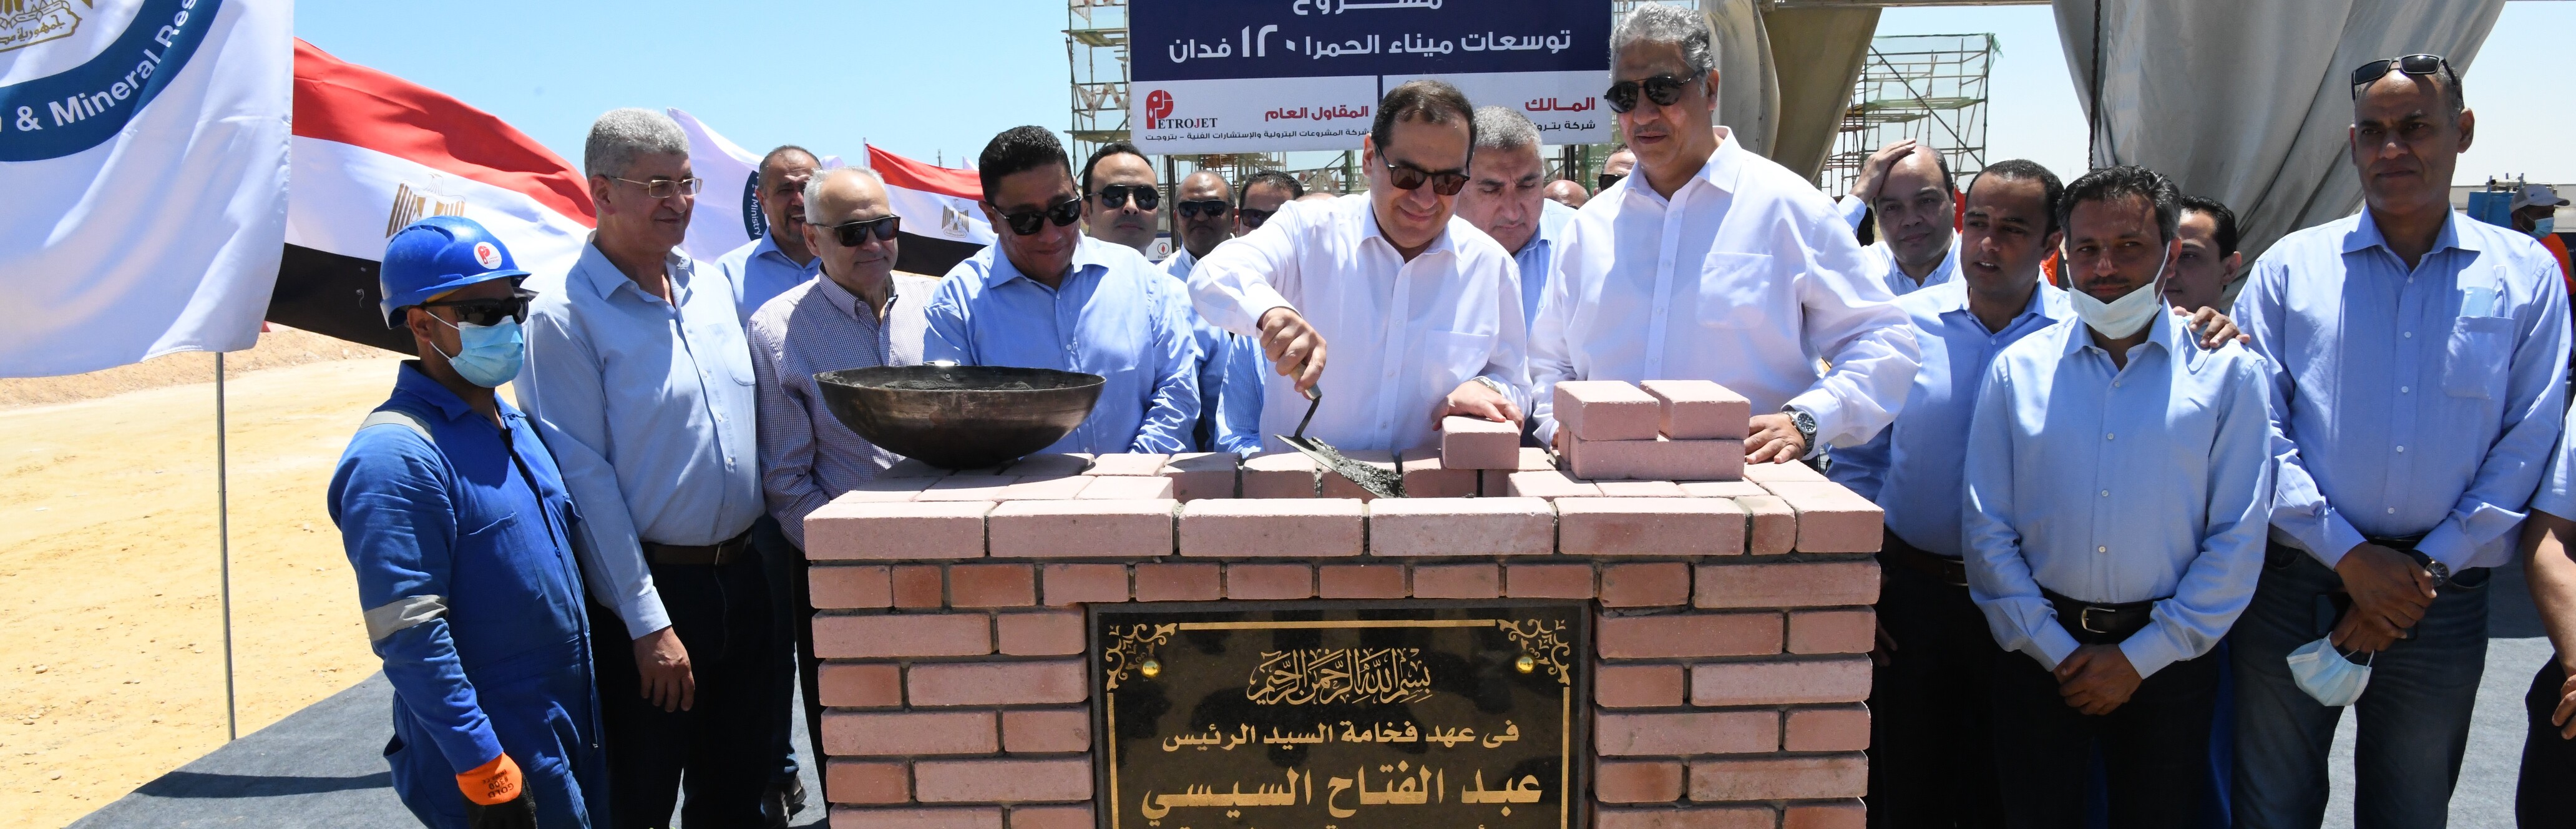 wepco egypt وزير البترول يضع حجر الاساس لتوسعات منطقة ميناء الحمراء البترولي